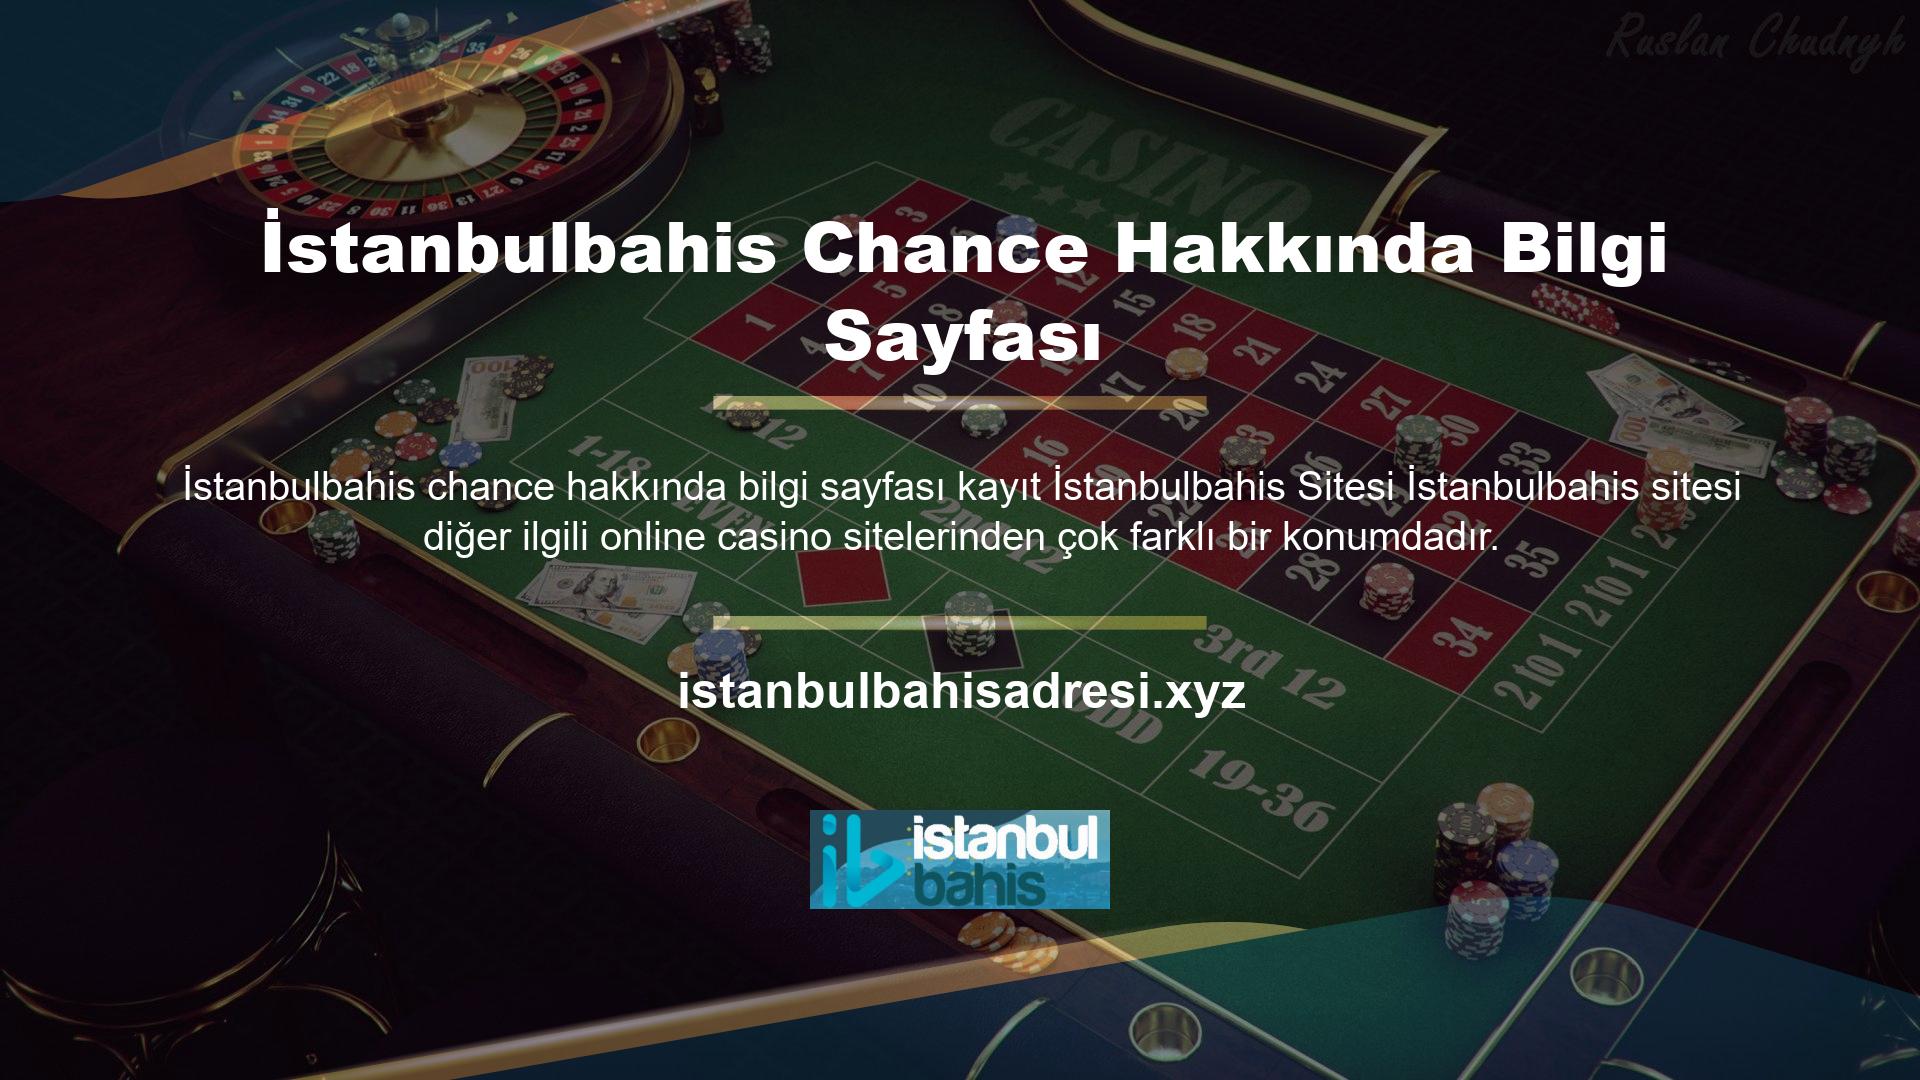 İstanbulbahis sitesi, yabancı menşeli ve mülkiyeti nedeniyle TİB tarafından yasa dışı casino sitesi olarak sınıflandırılmaktadır